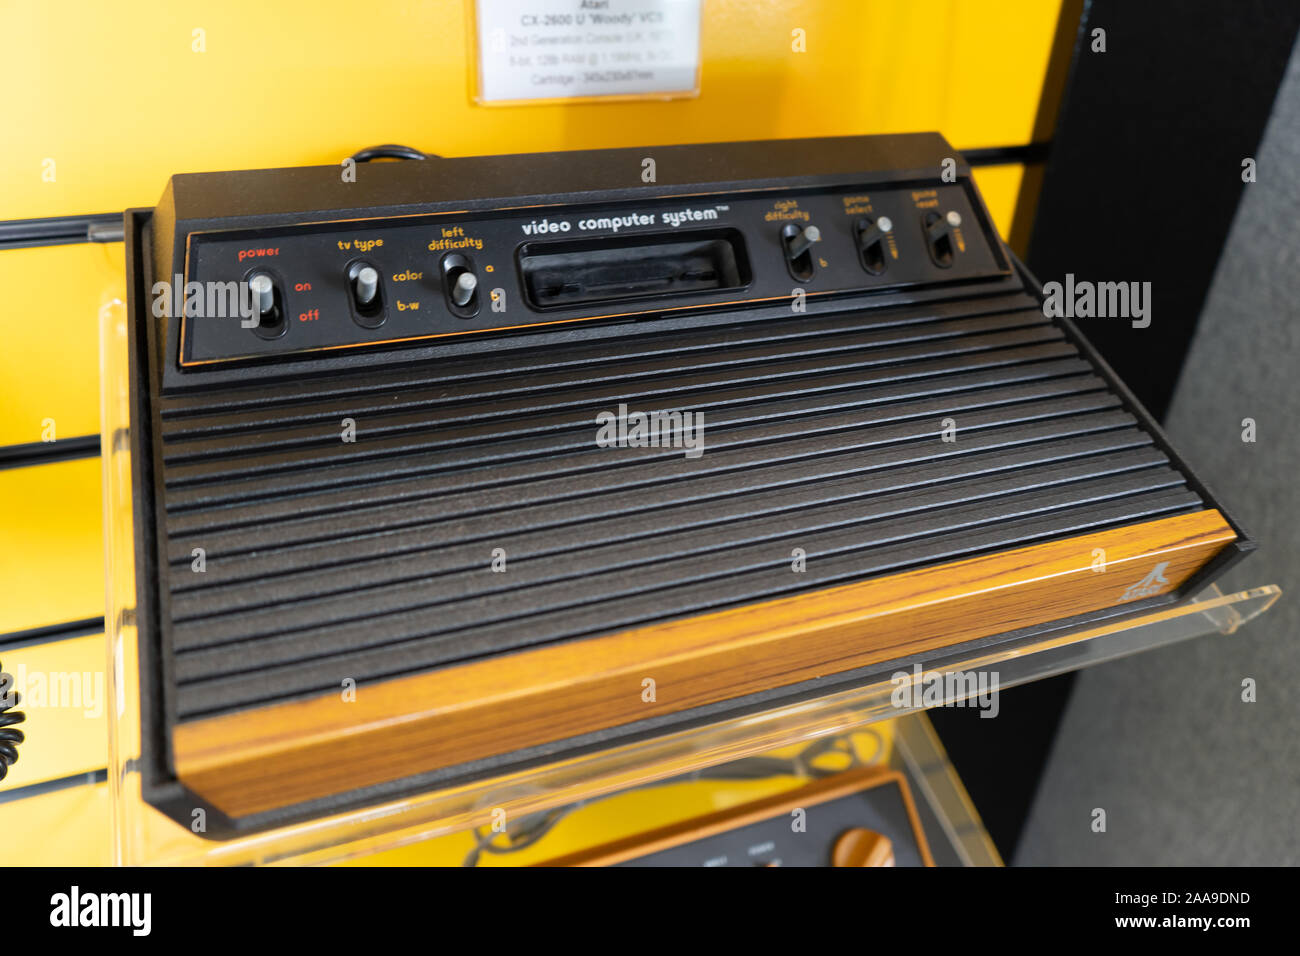 Une console de jeux vidéo Atari 2600, une console de jeux rétro produites en 1982 et vendus dans les années 80 Banque D'Images